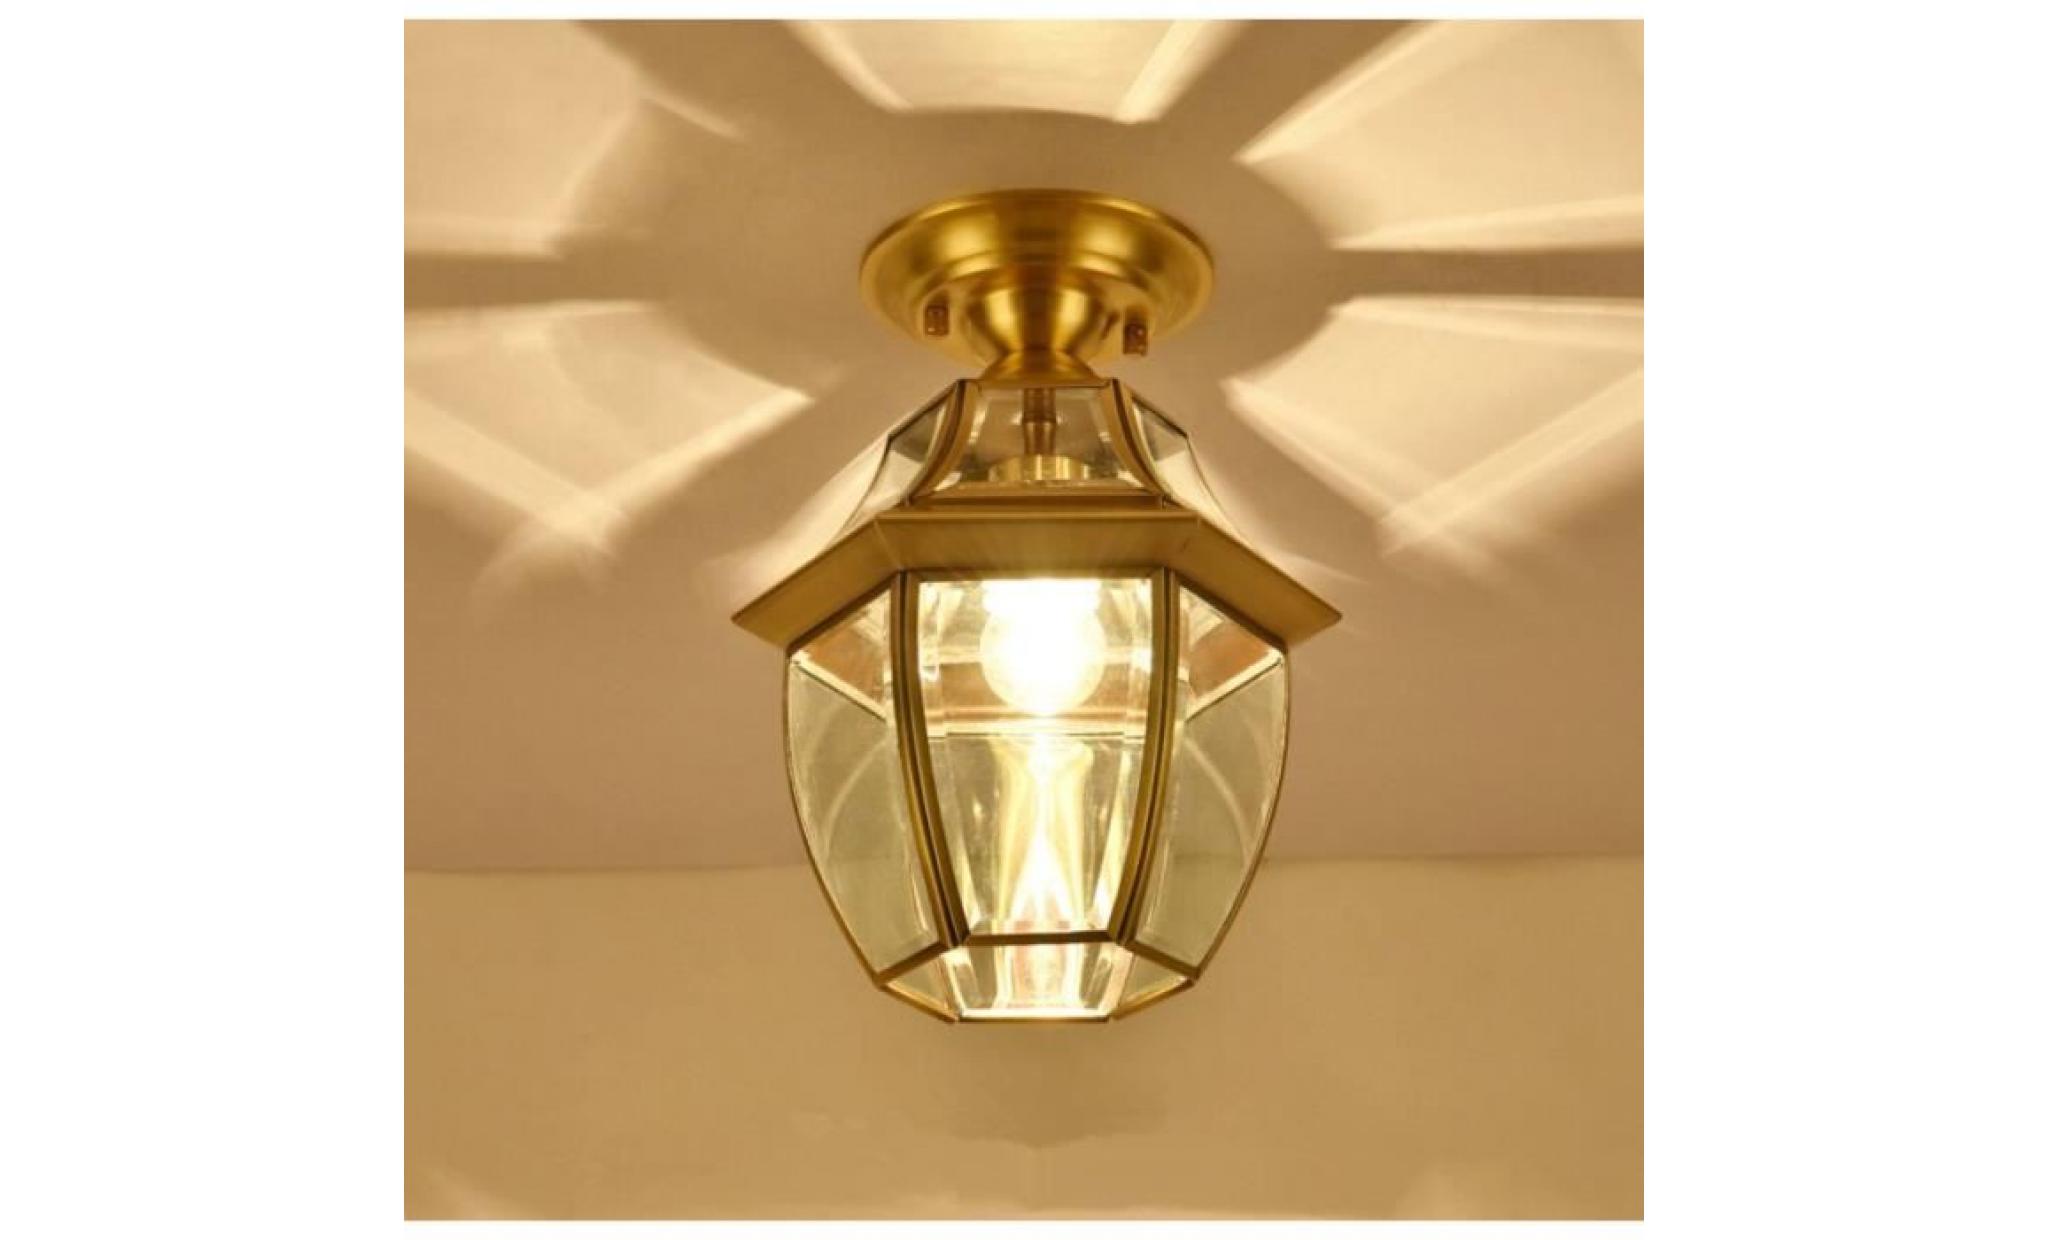 européen style lampe en cuivre nouveau simple créatif couloir aisle porche cage d'escalier plafond lamp l'éclairage applique murale